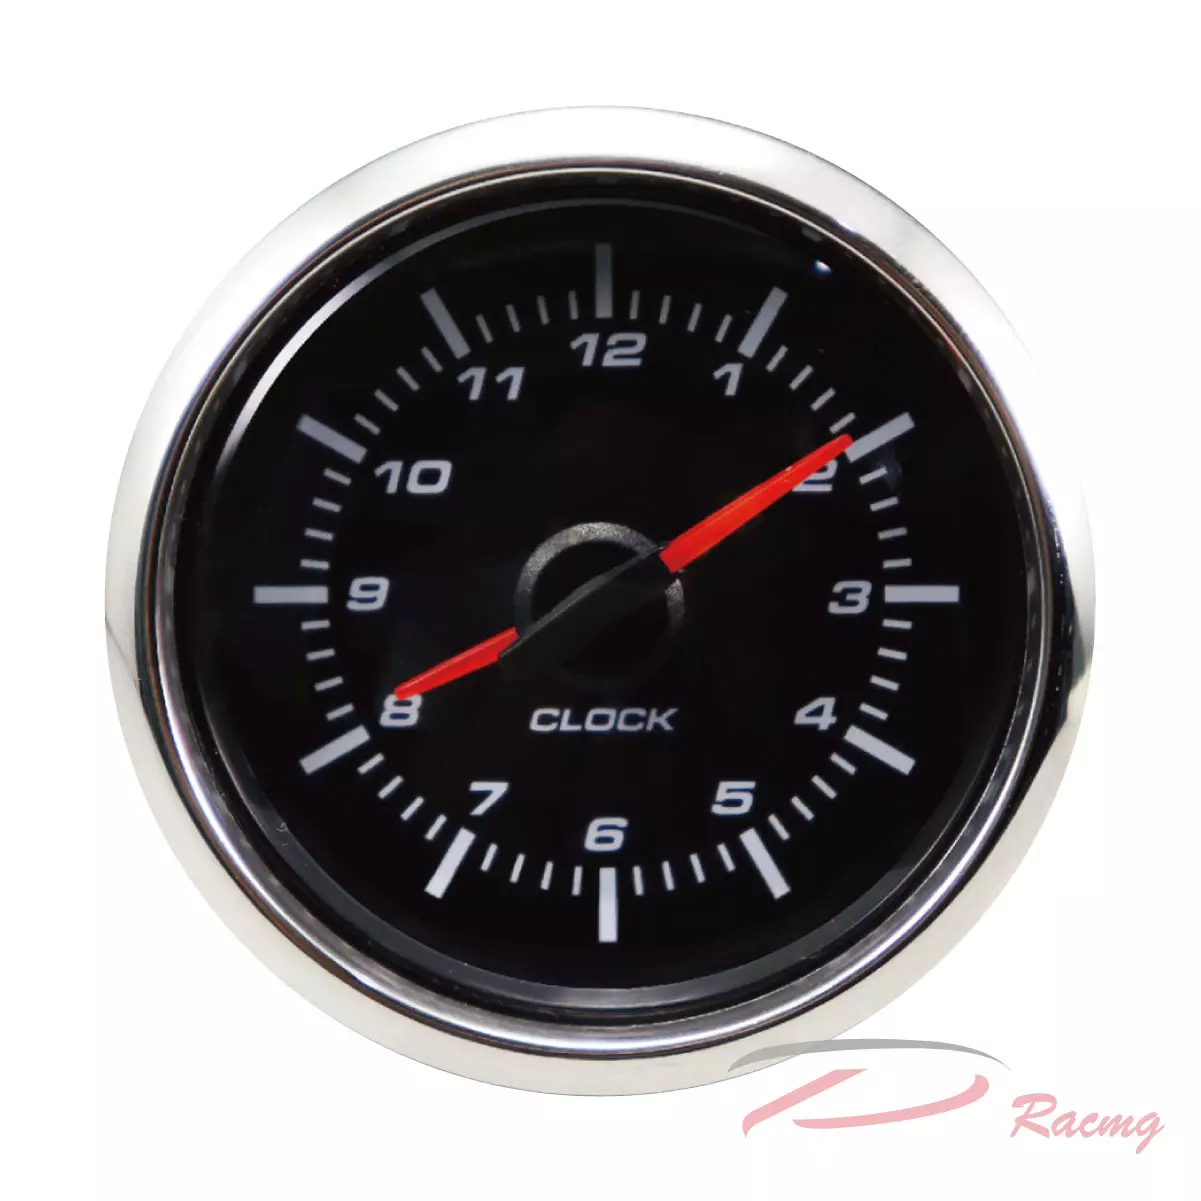 Dracing, Depo racing, 52mm, 2 1 16, 2 , car, digital, analog, clock gauge kits , automobile meter